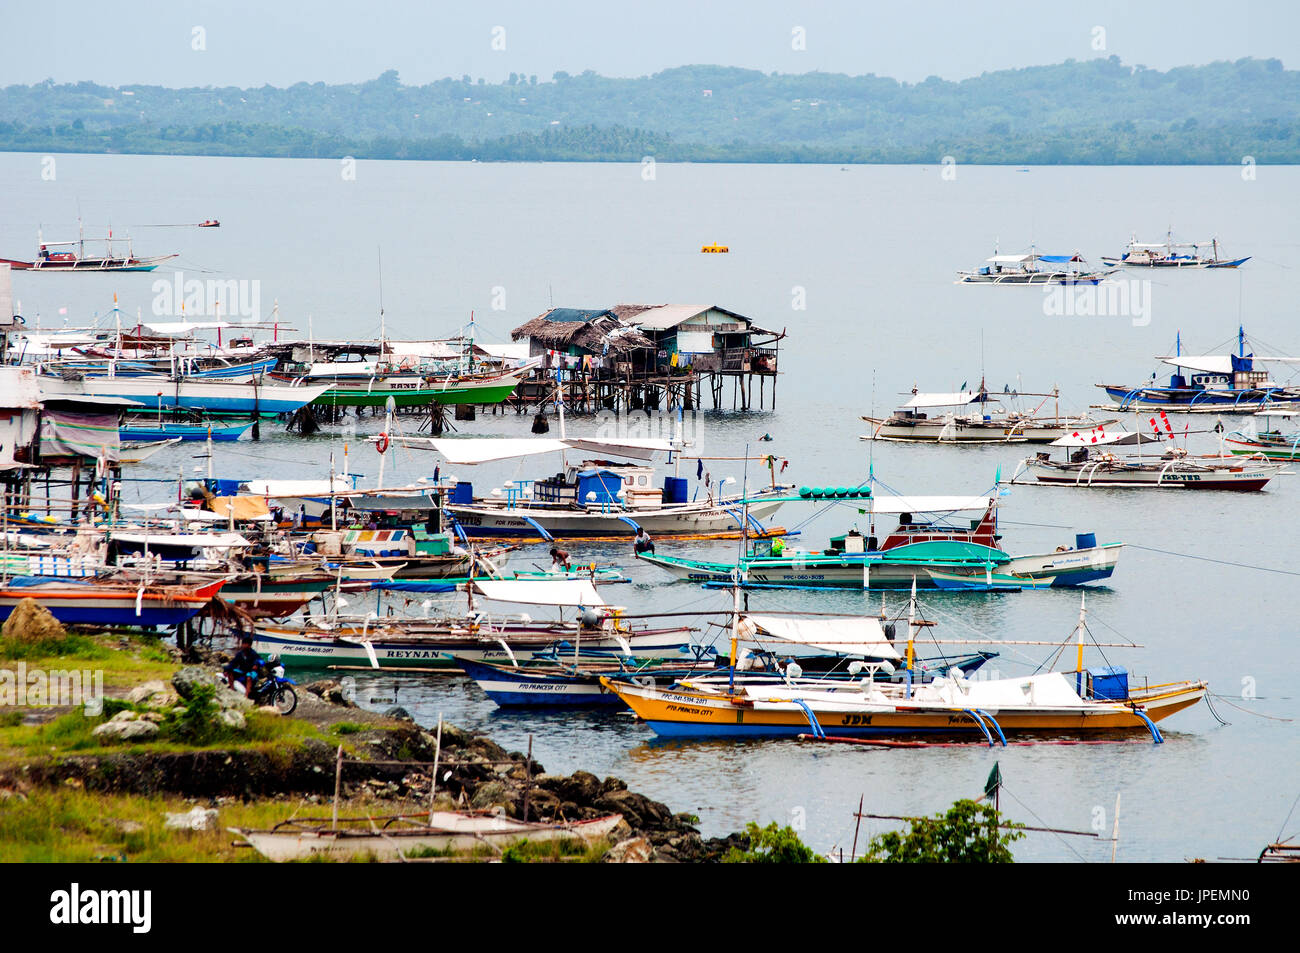 Vista aerea di barche da pesca e stilt villaggio di pescatori che si trova nei pressi del porto, Puerto Princesa, PALAWAN FILIPPINE Foto Stock